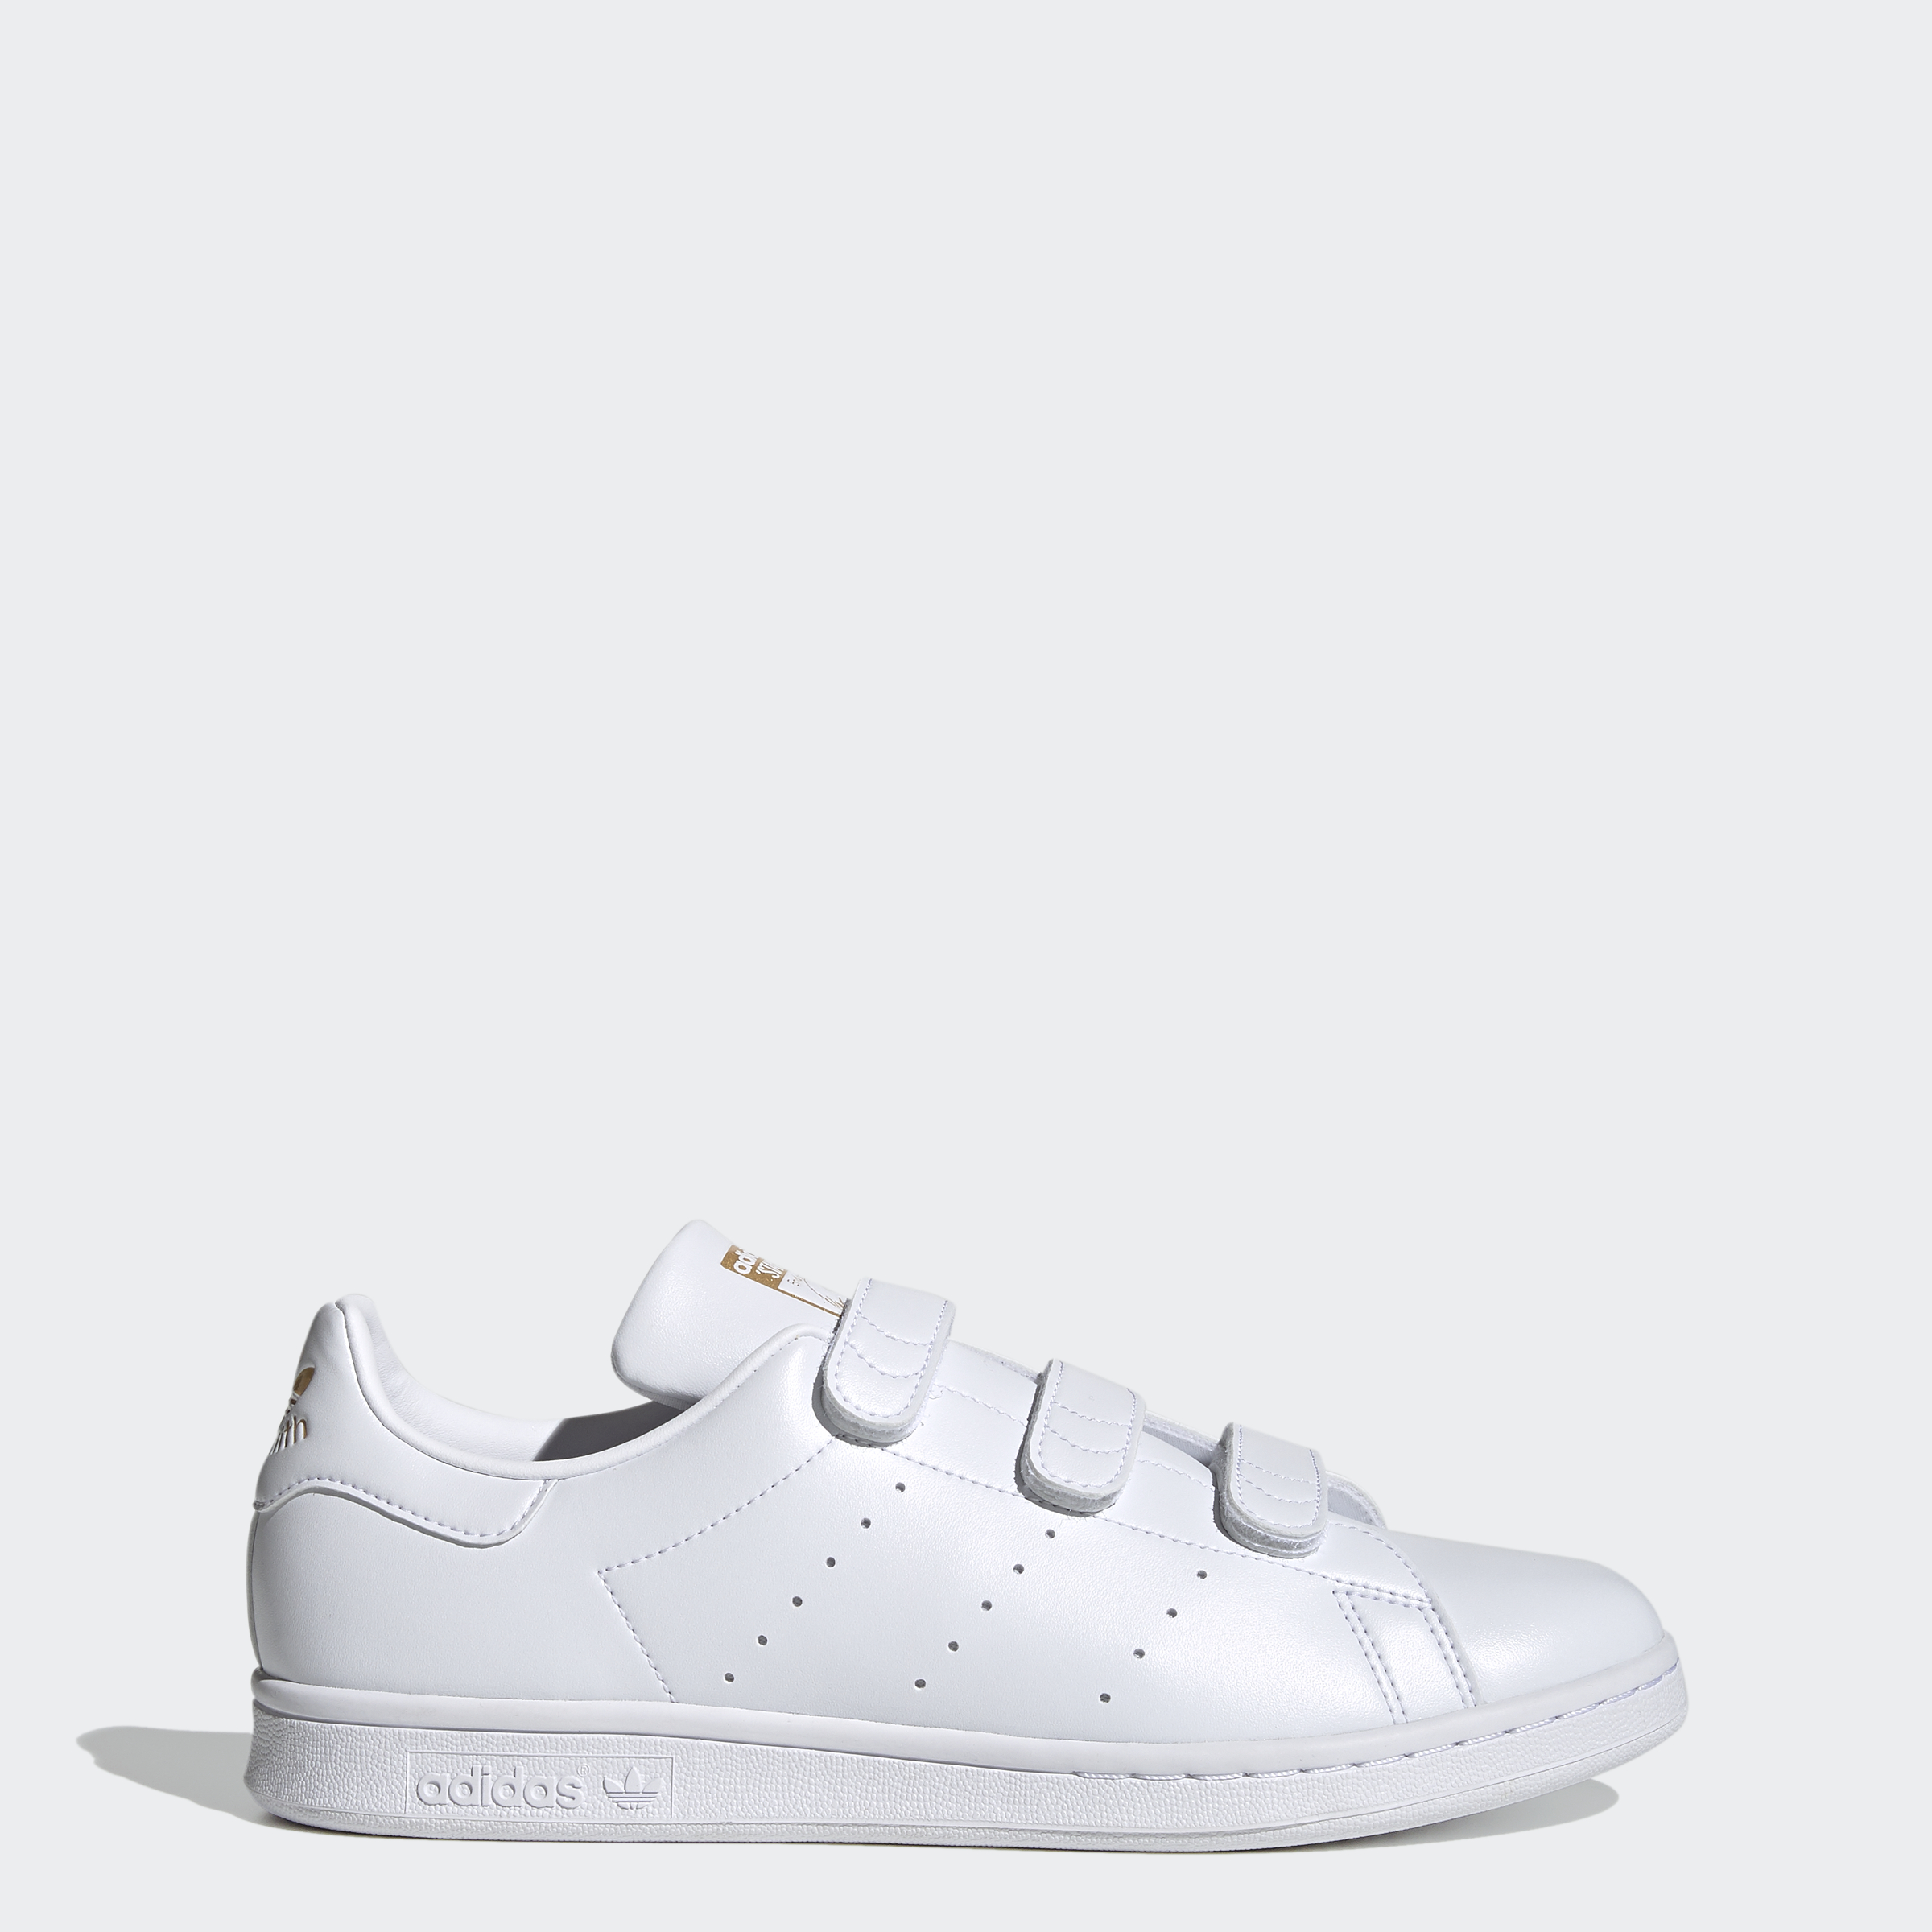 adidas Men's Stan Smith Shoes (White/White or White/Green) $32.50 + Free Shipping